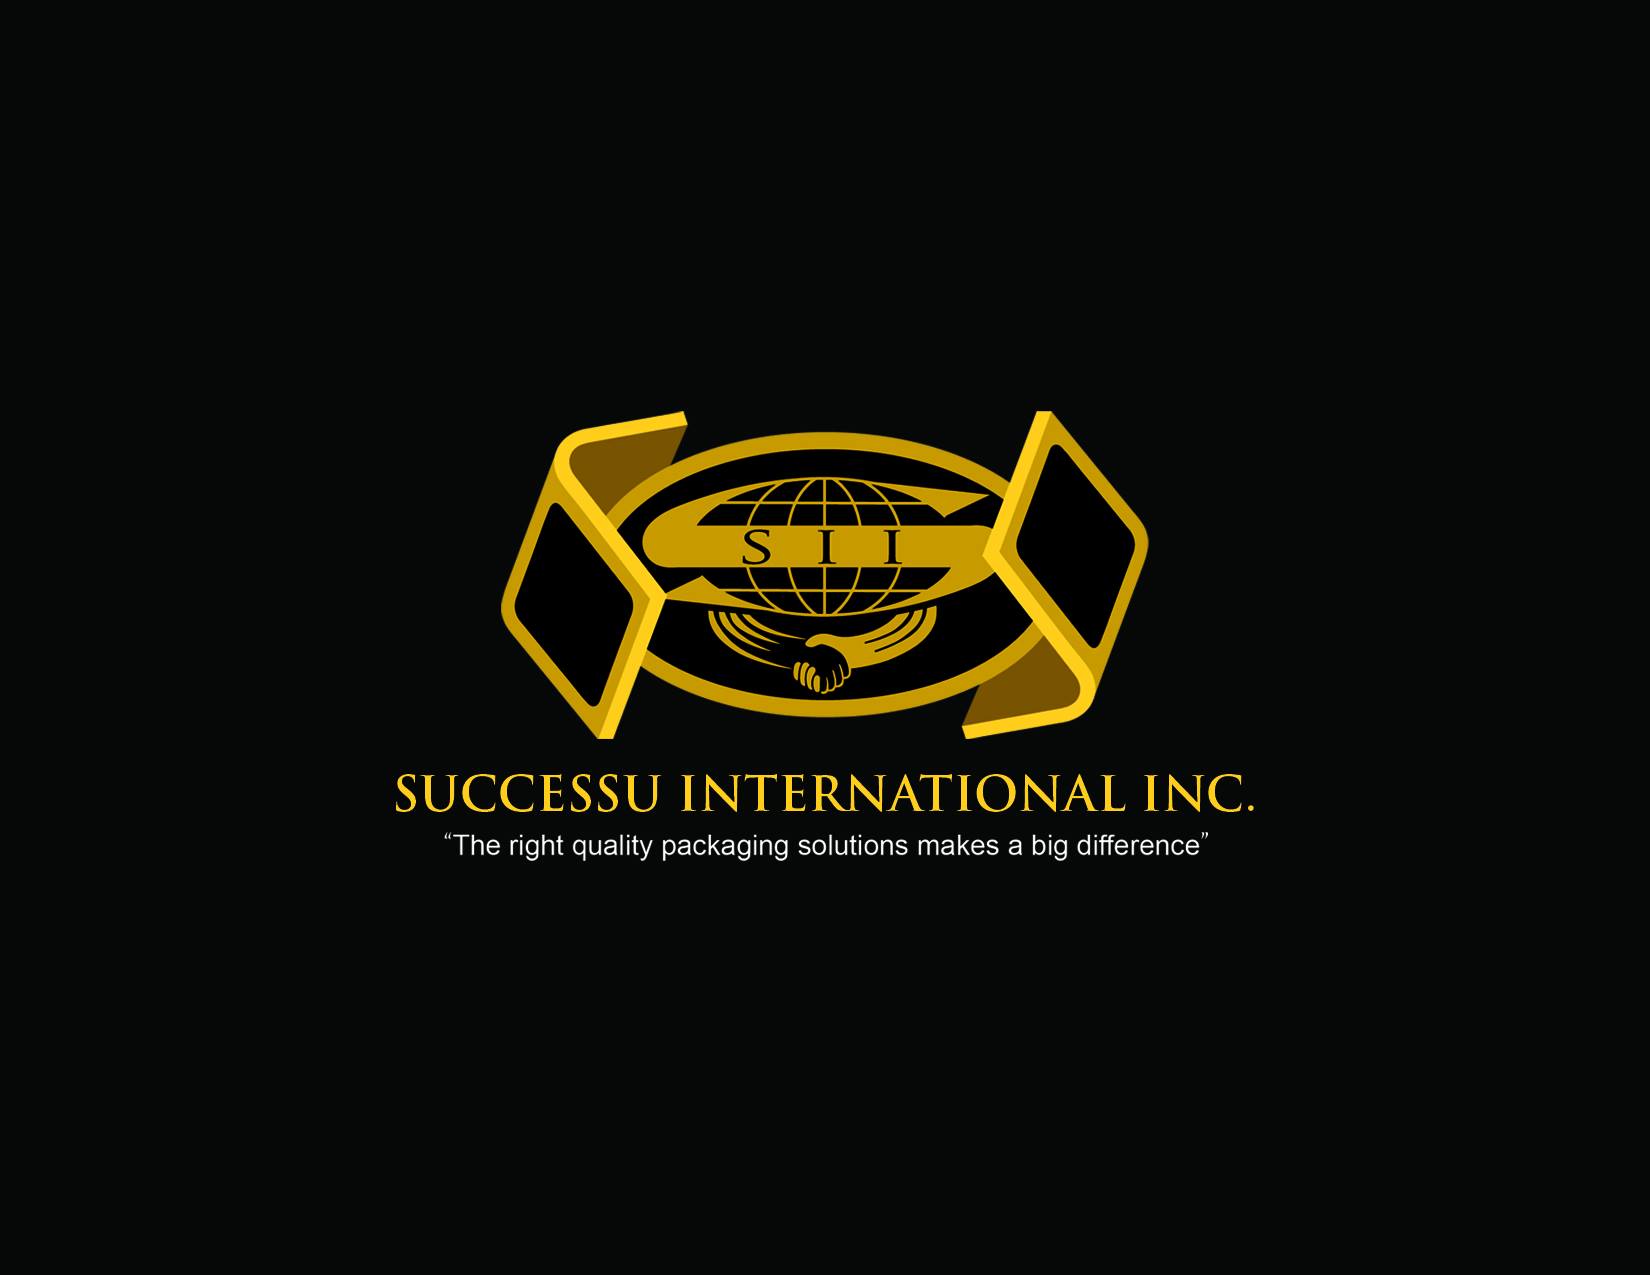 Successu International Inc.